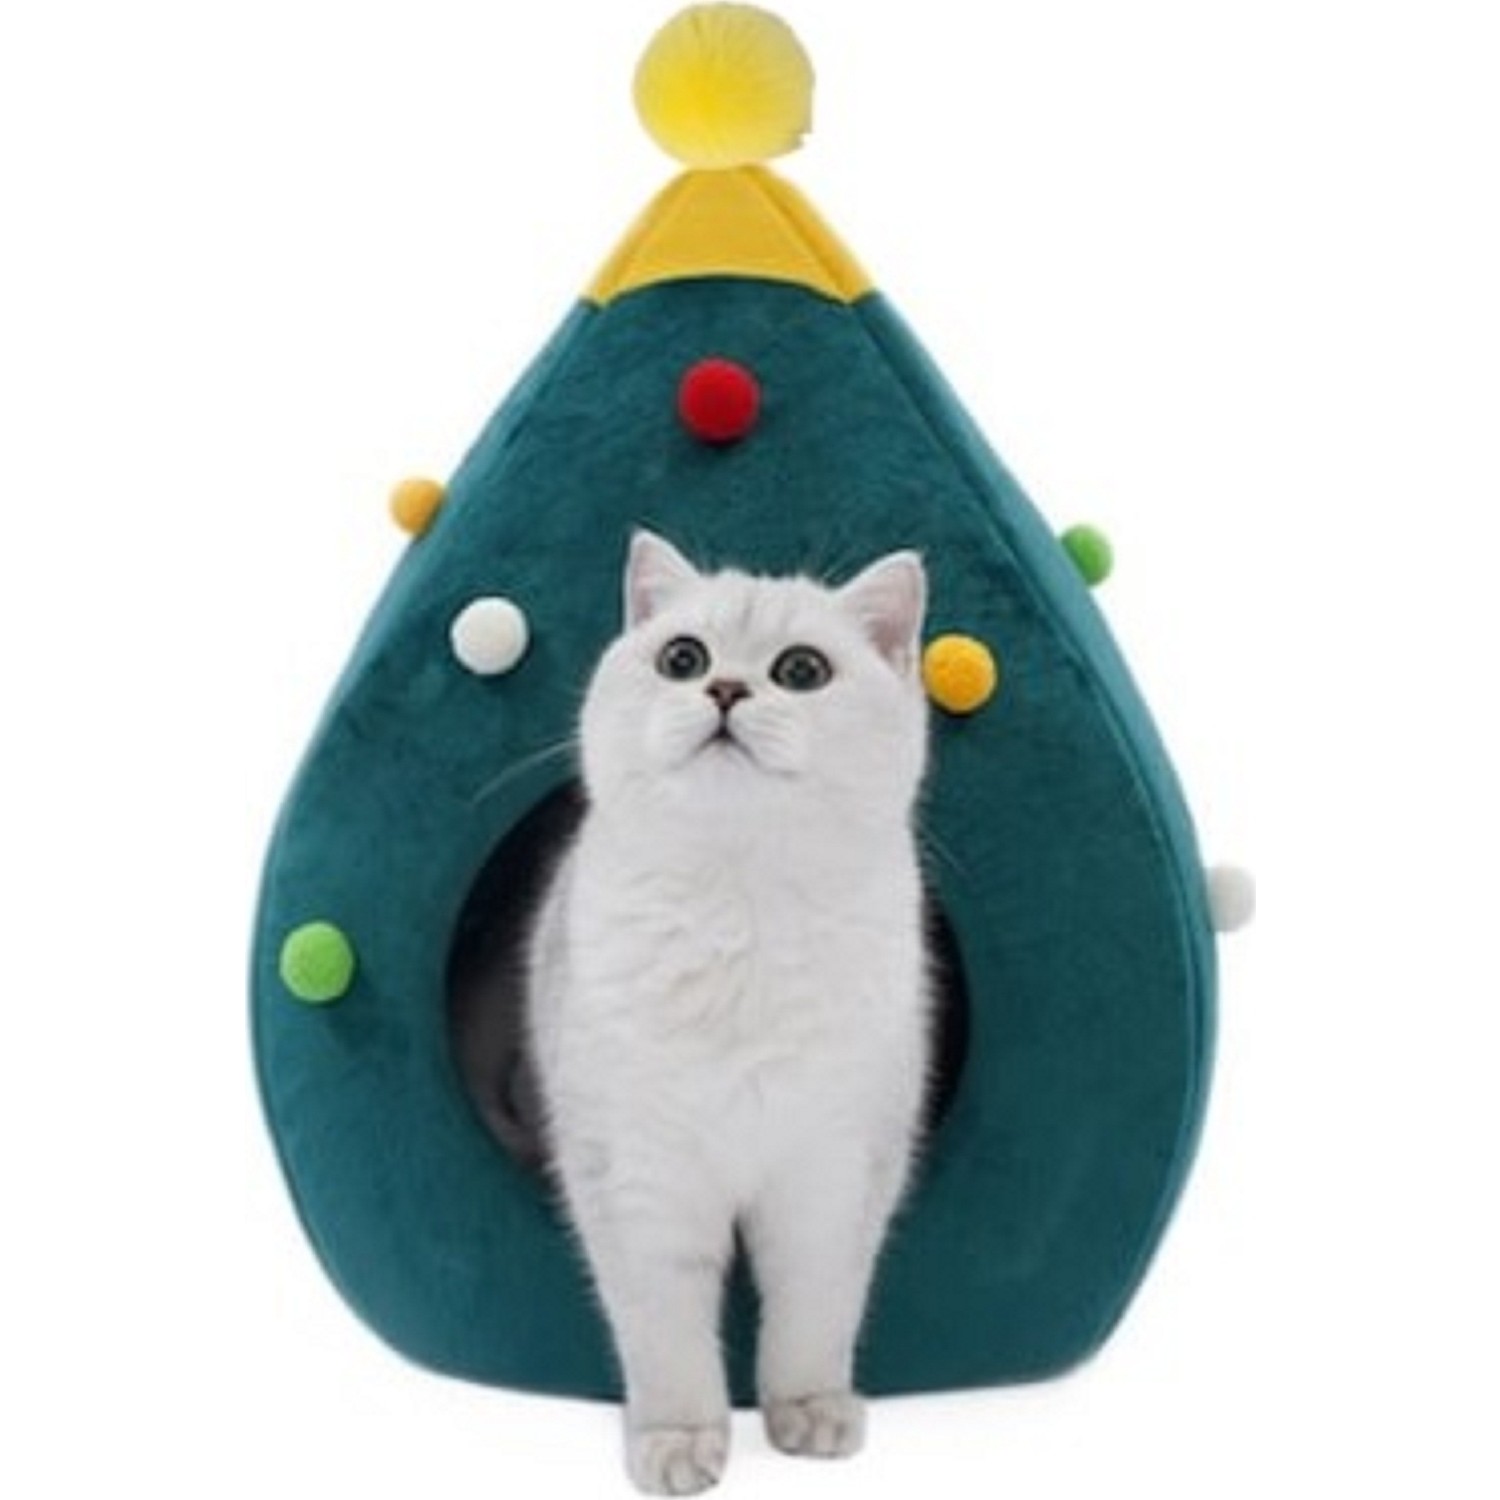 Pericat Kedi Yatağı Kedi Evi Noel Çam Fiyatı Taksit Seçenekleri